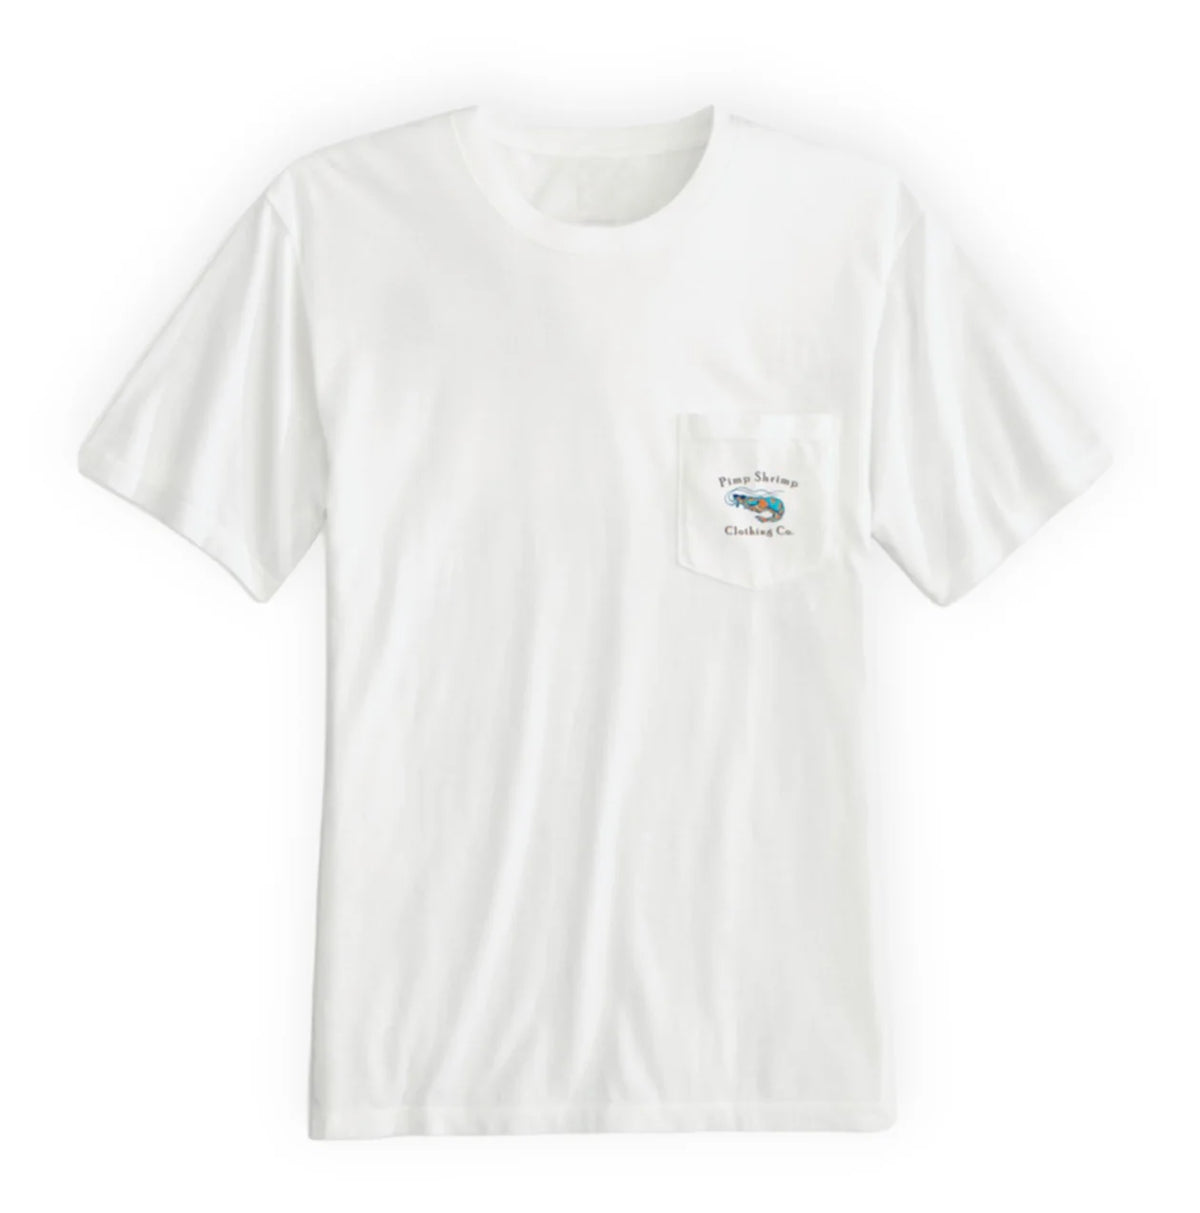 Pimp Shrimp Sportfisher Shirt